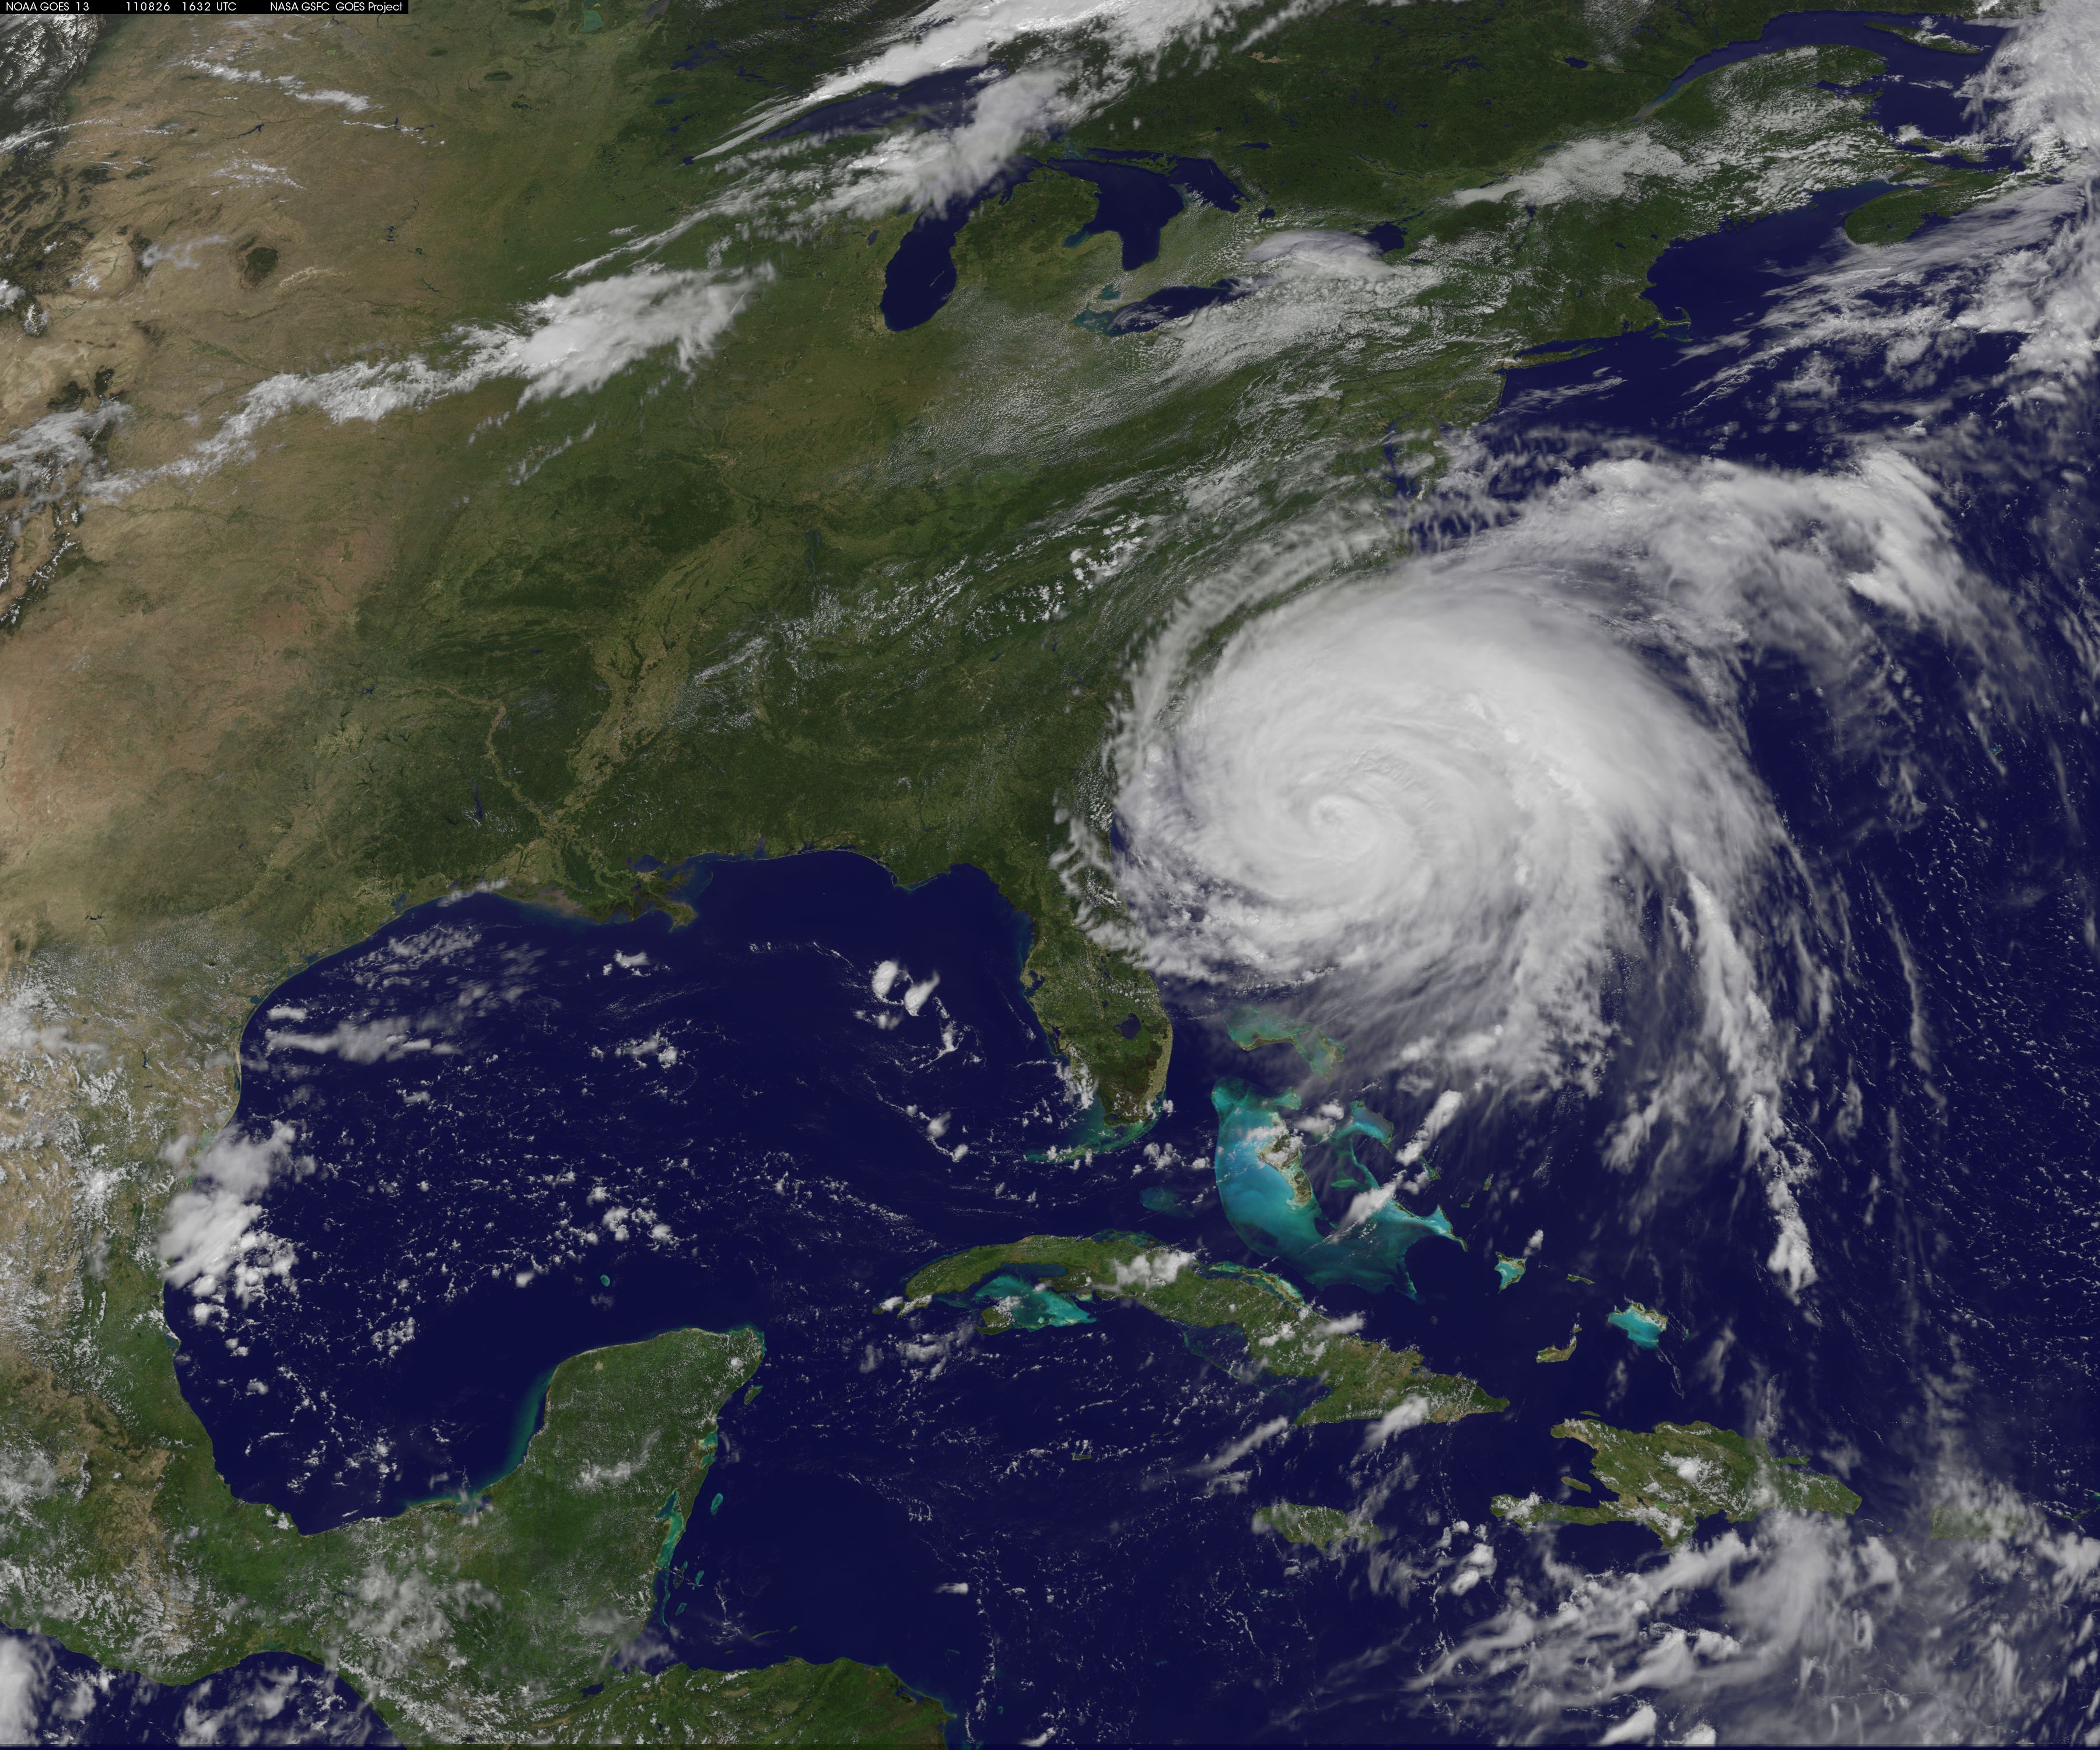 Image of Hurricane Irene from NASA